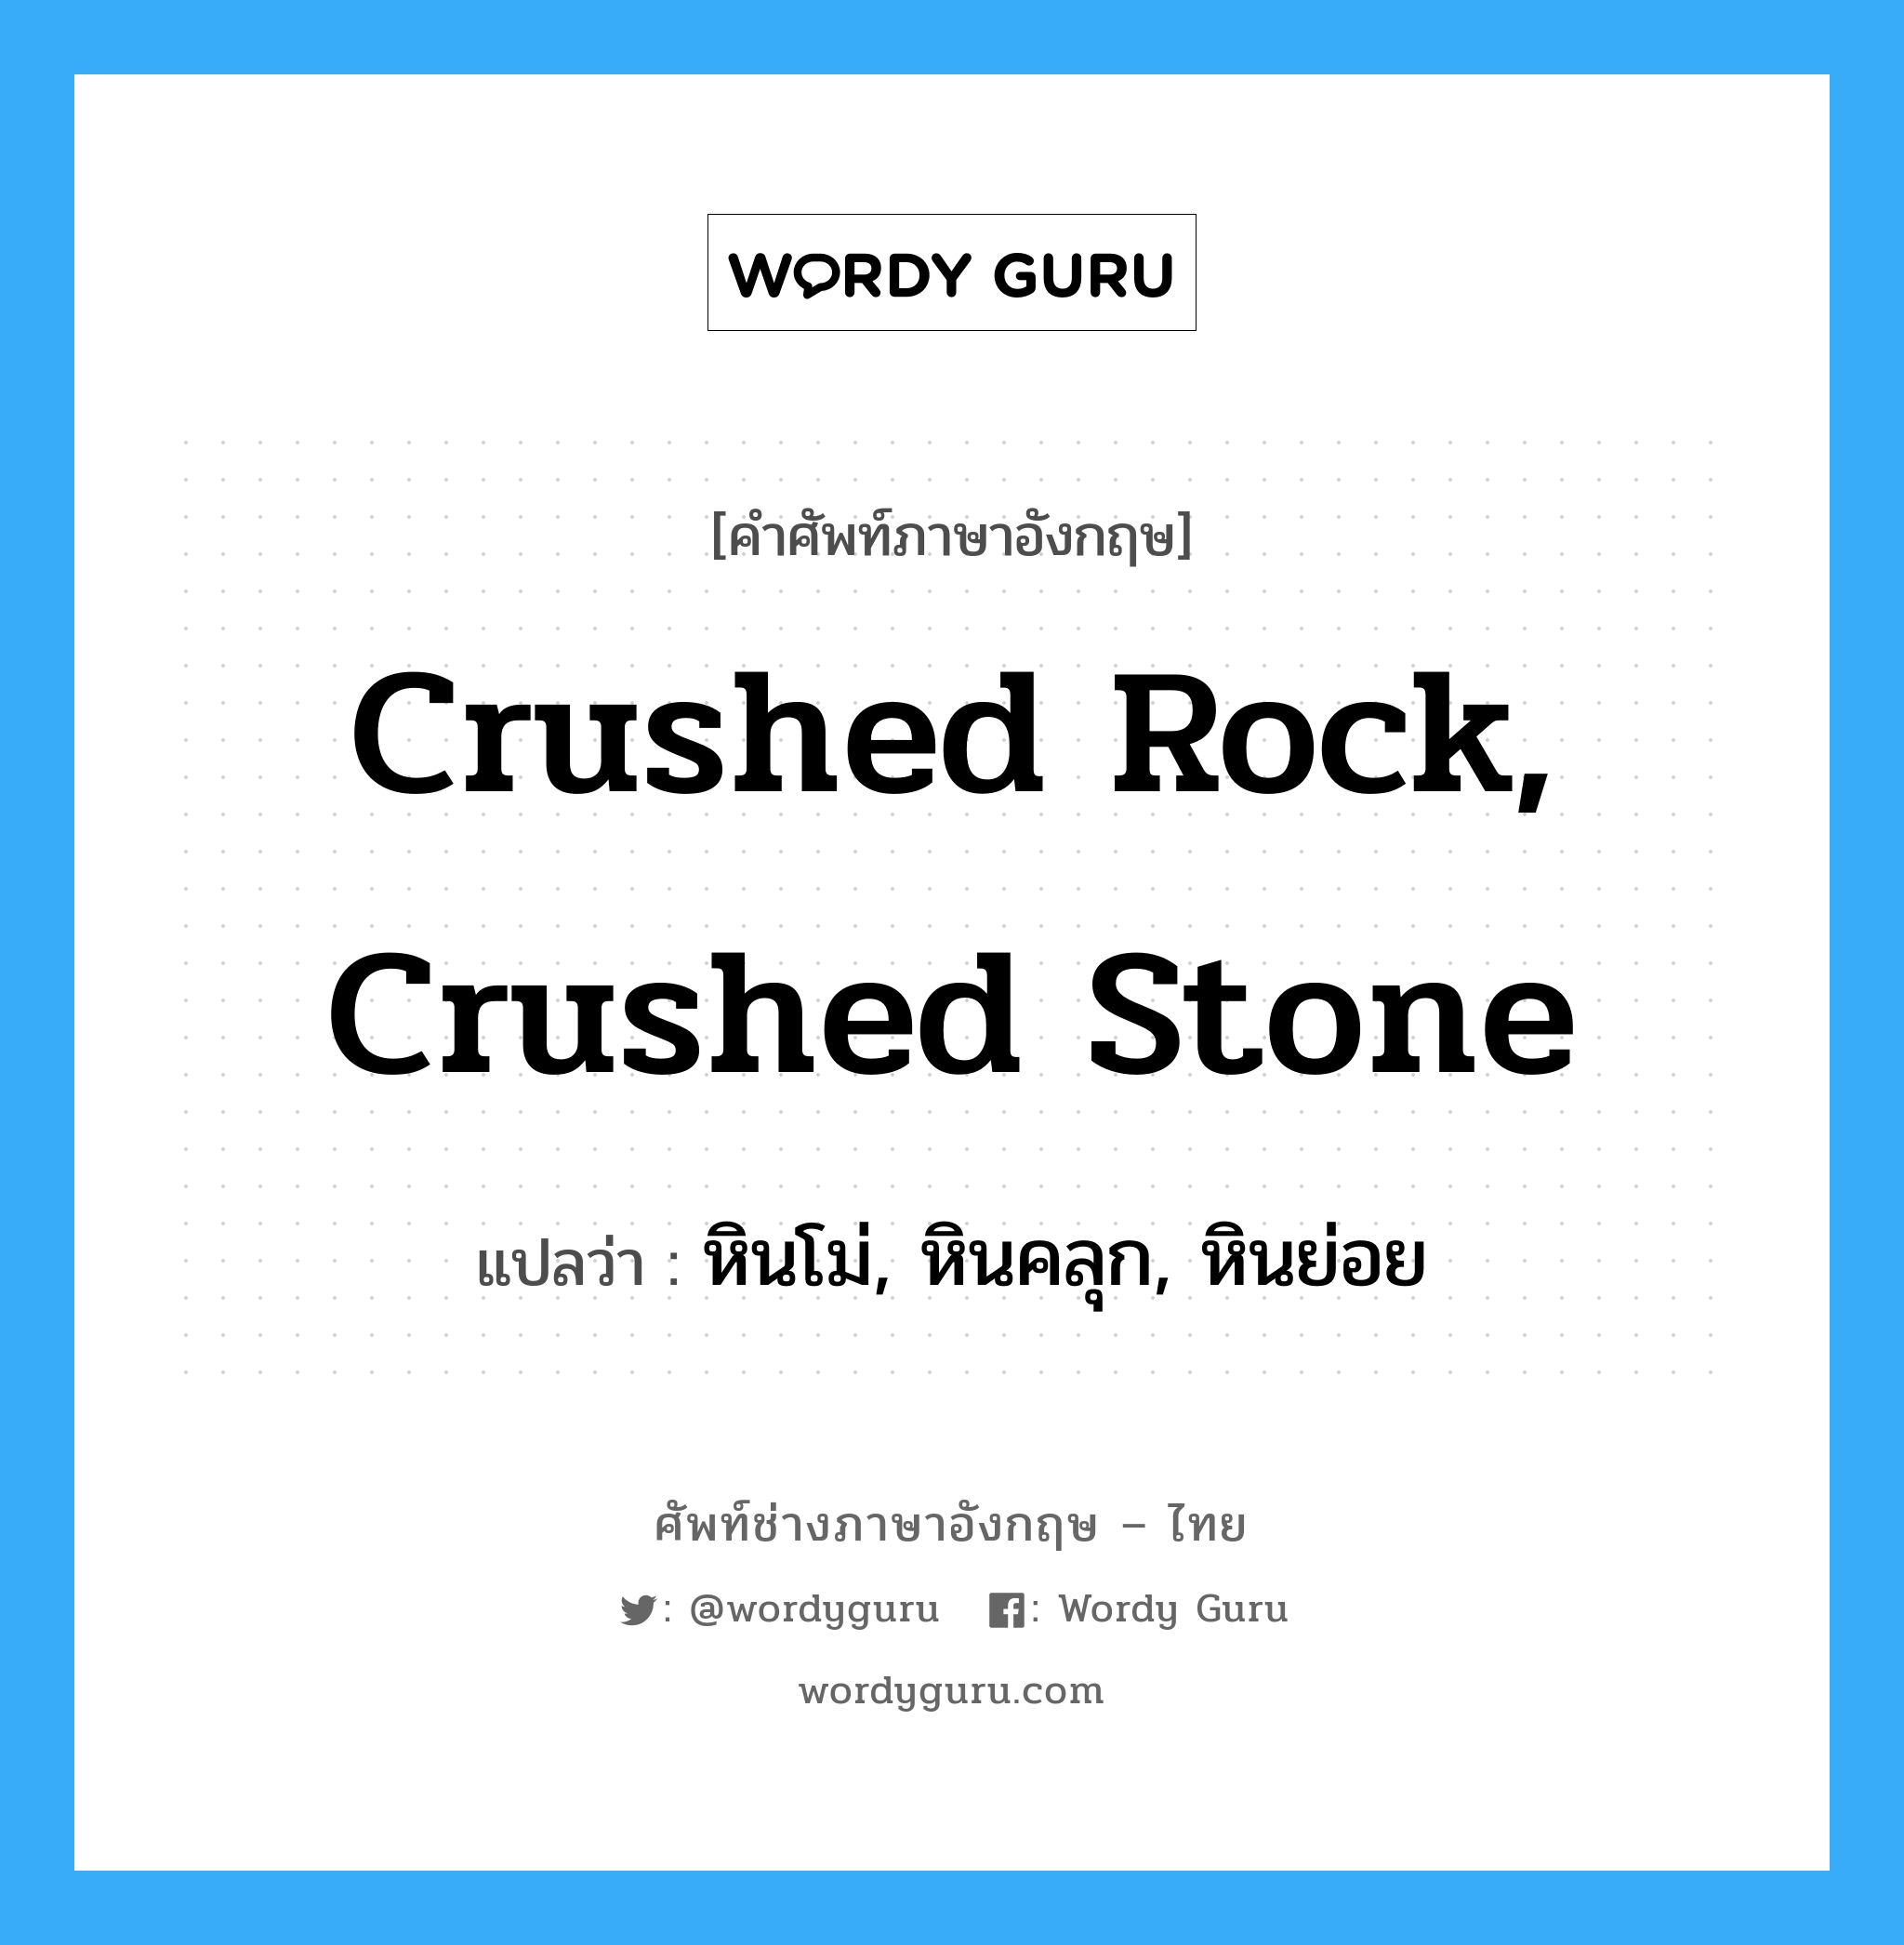 หินโม่, หินคลุก, หินย่อย ภาษาอังกฤษ?, คำศัพท์ช่างภาษาอังกฤษ - ไทย หินโม่, หินคลุก, หินย่อย คำศัพท์ภาษาอังกฤษ หินโม่, หินคลุก, หินย่อย แปลว่า crushed rock, crushed stone